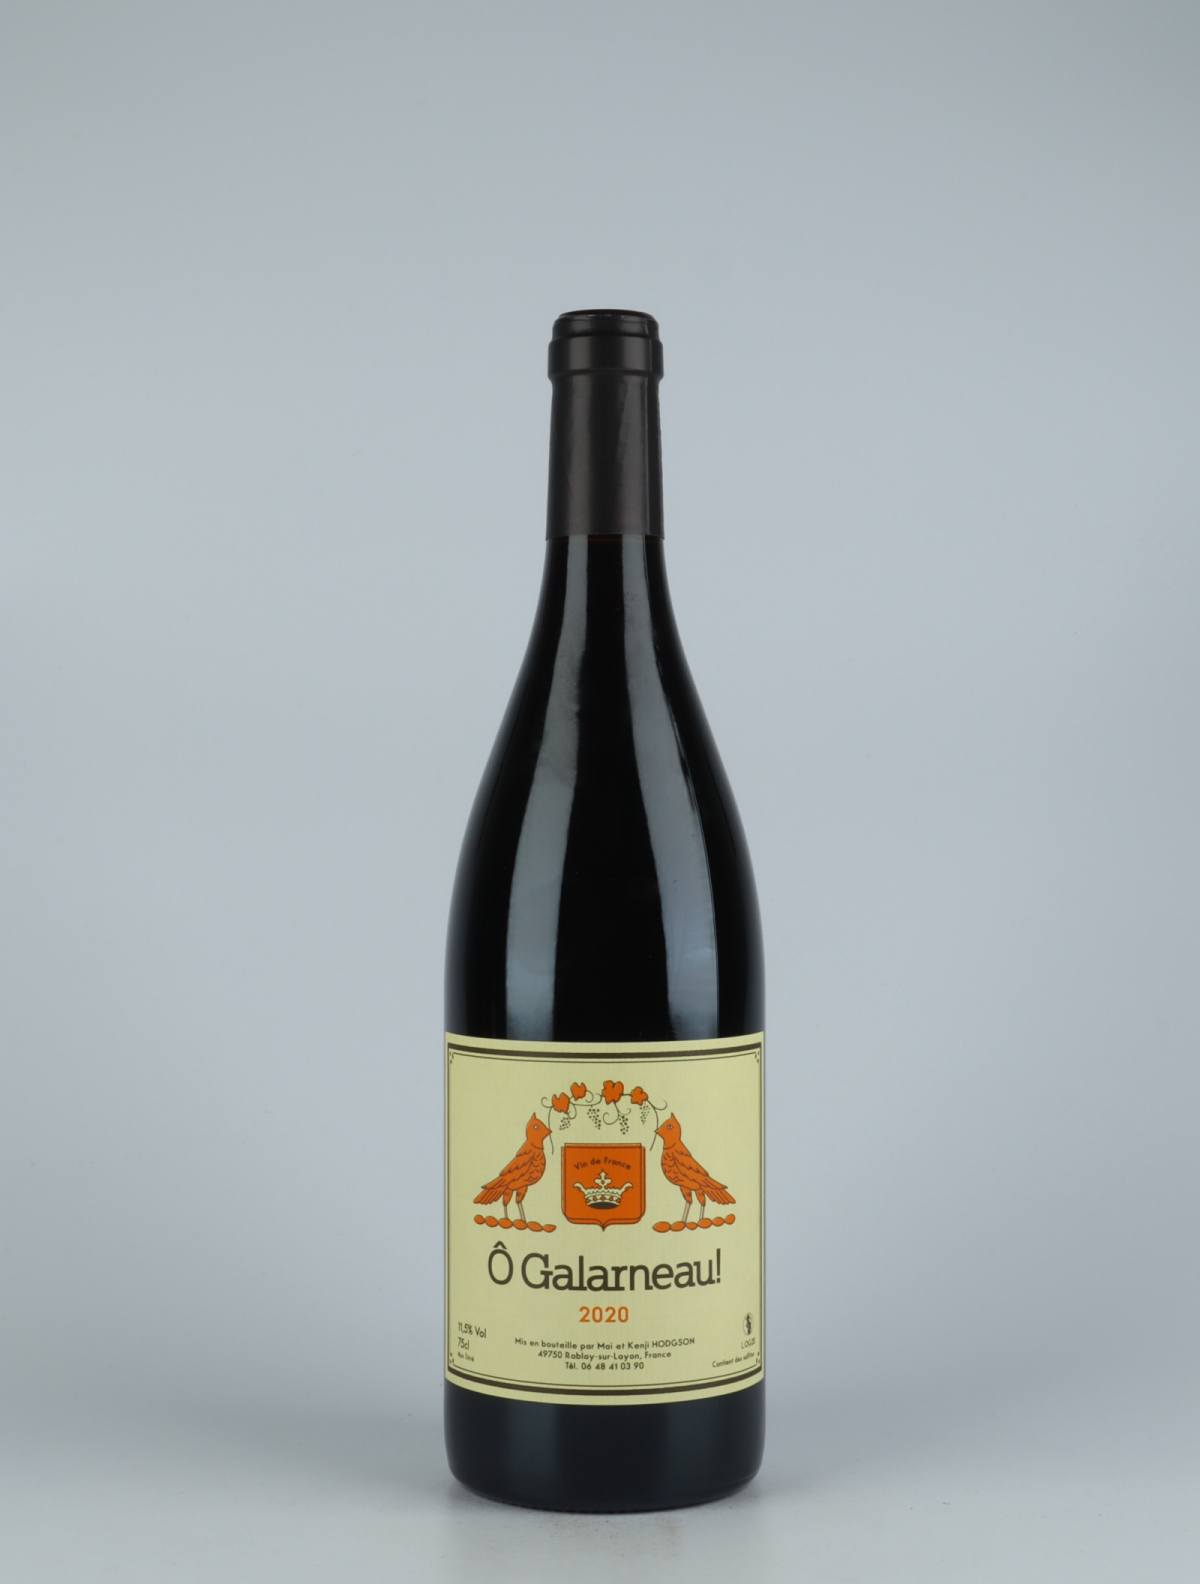 A bottle 2020 Ô Galarneau! Red wine from Mai et Kenji Hodgson, Loire in France